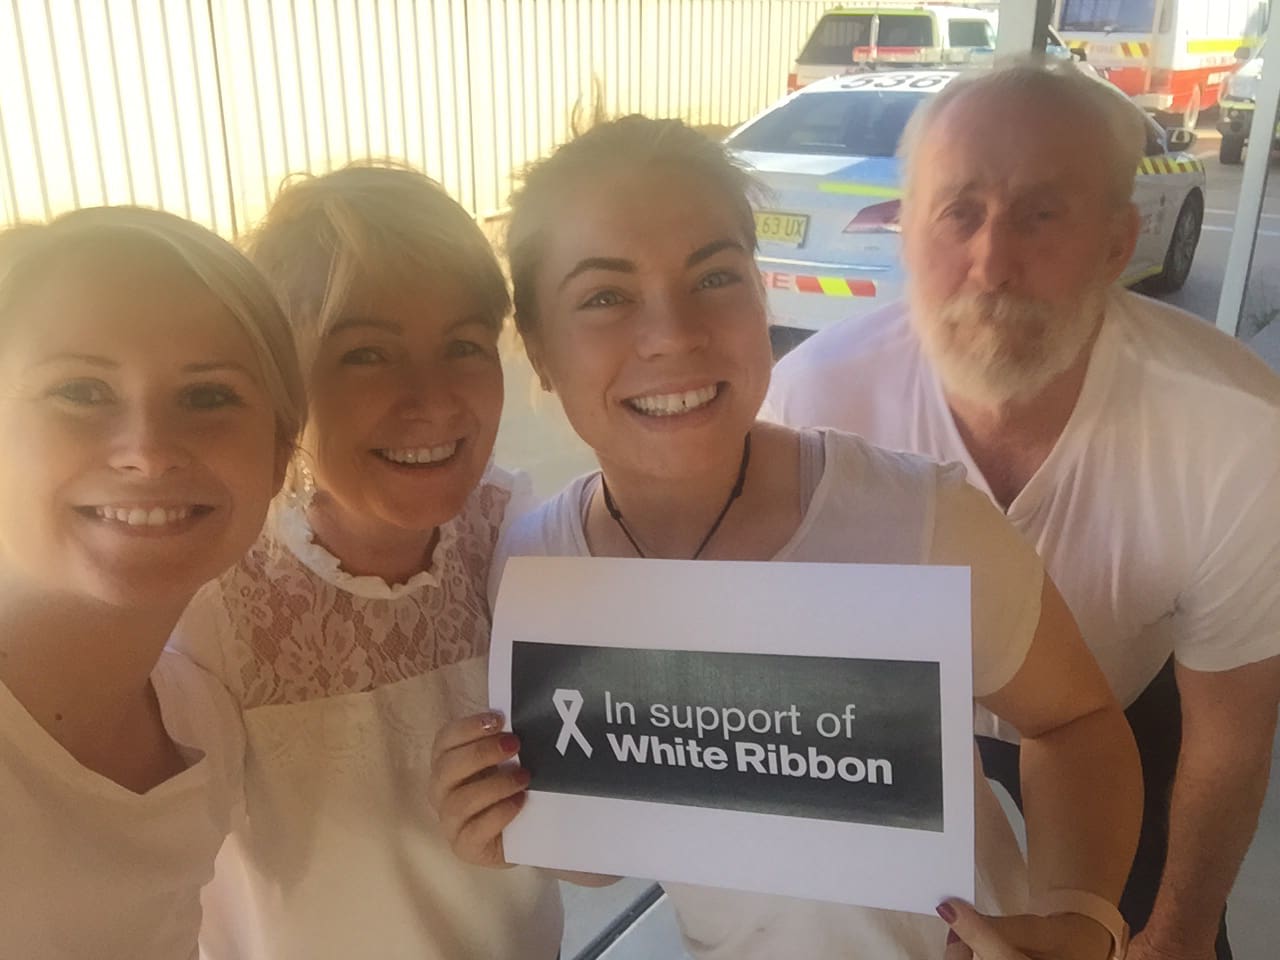 White Ribbon Day